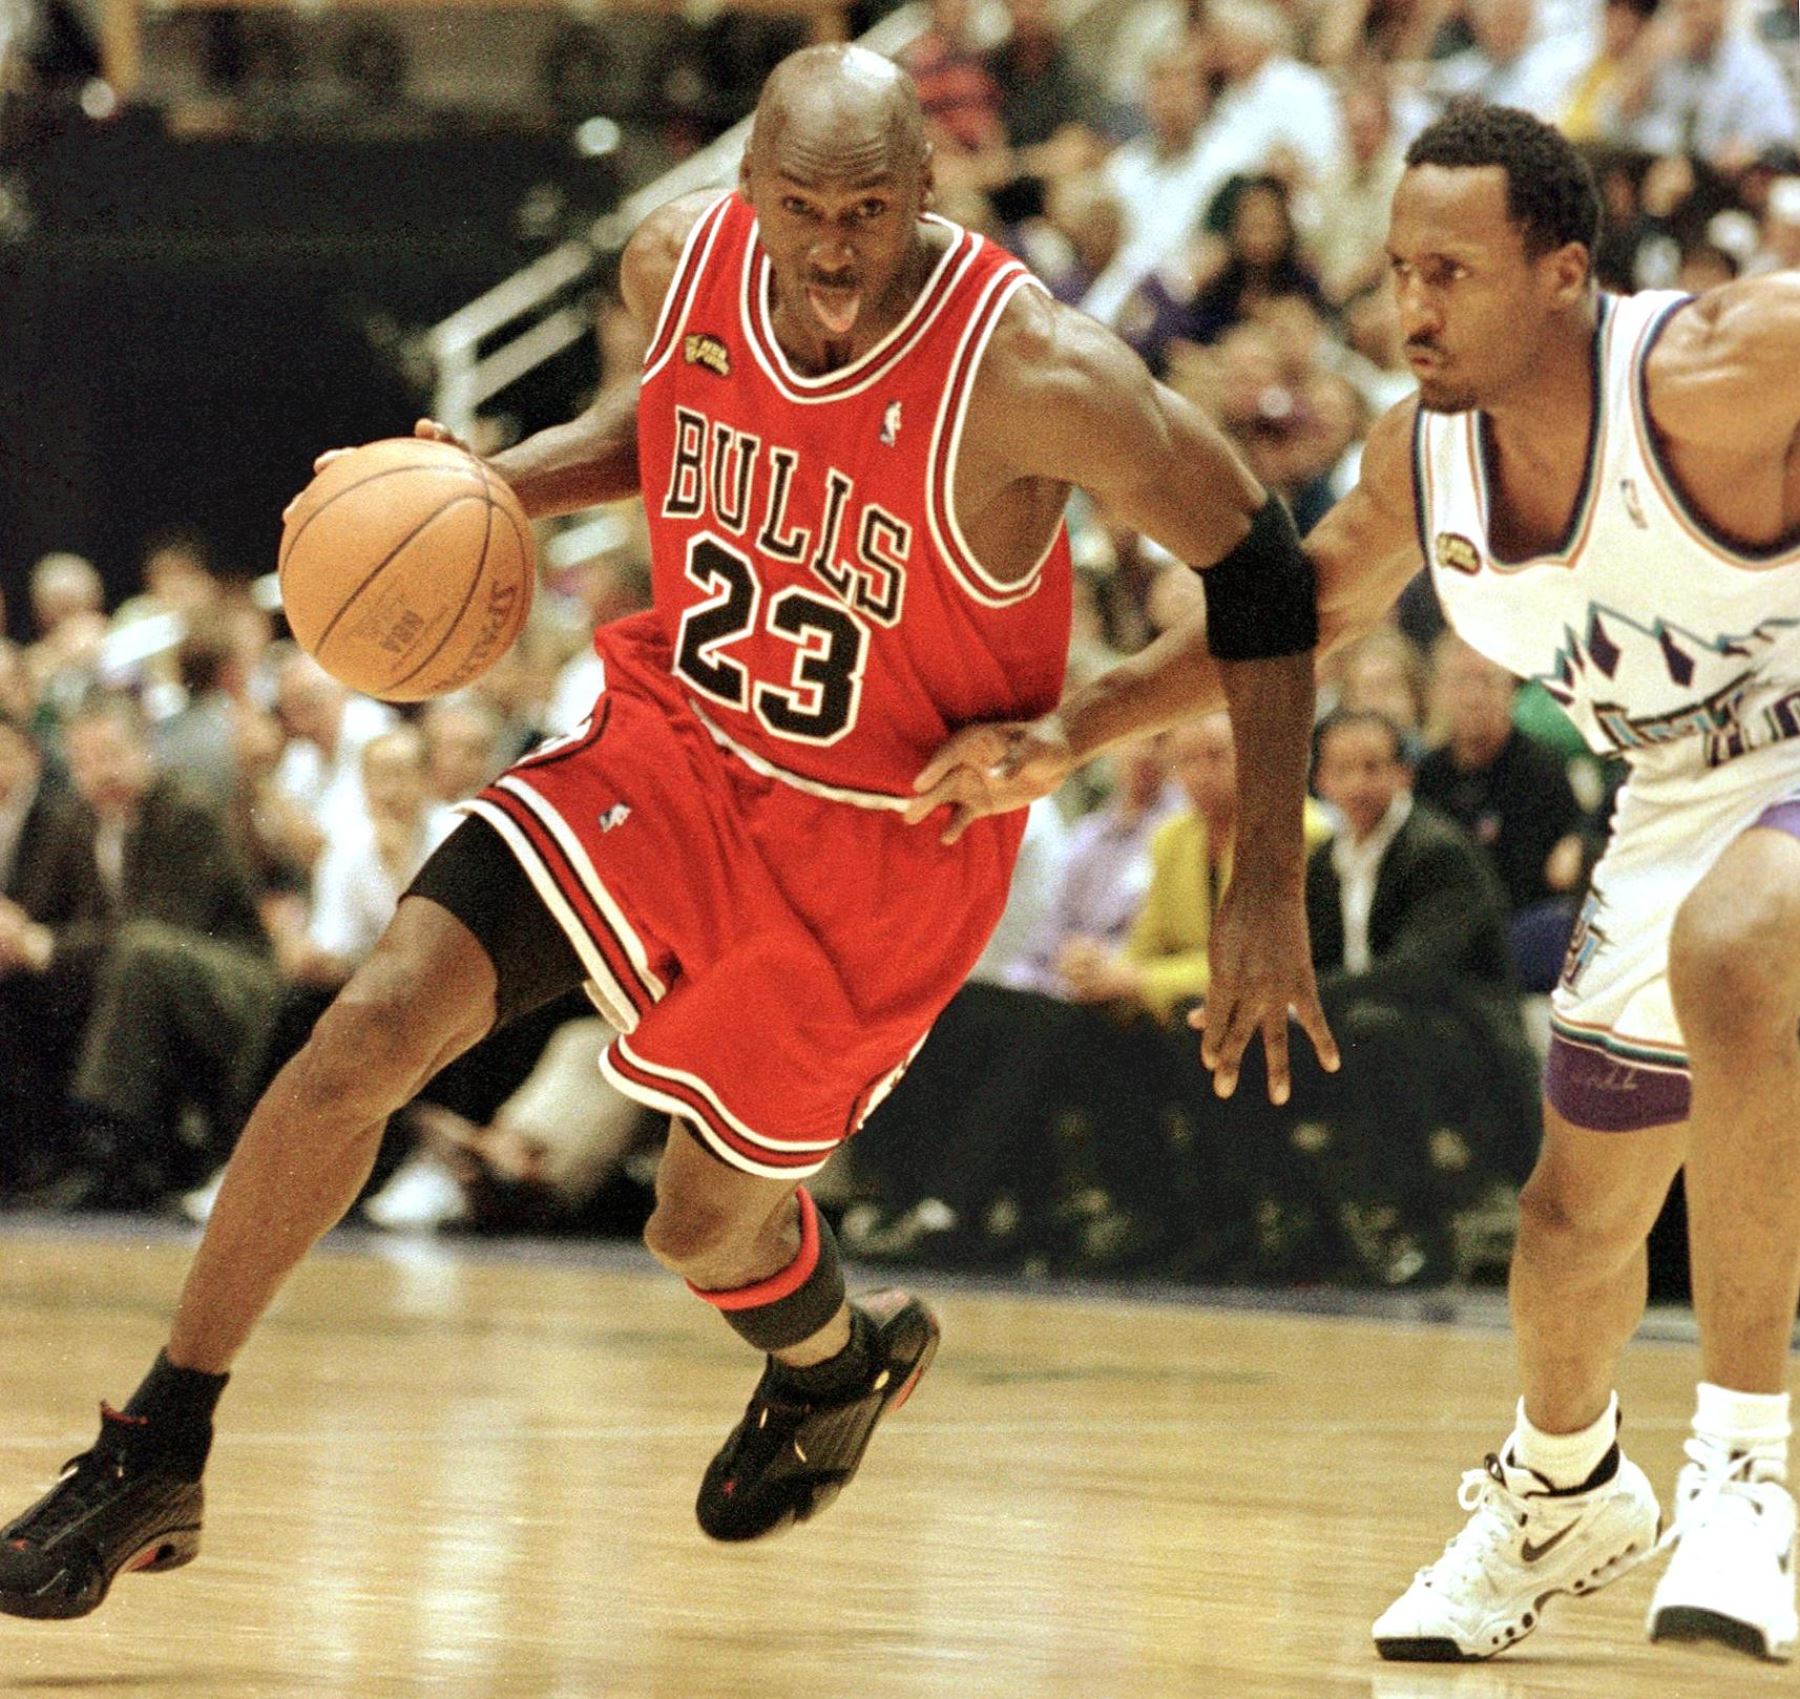 Tras un mes privados de basquetbol por la pandemia de COVID-19, jugadores y aficionados de la NBA vivieron con intensidad los primeros capítulos de "The Last Dance", la serie documental que ofrece una mirada privilegiada a los Chicago Bulls de Michael Jordan.